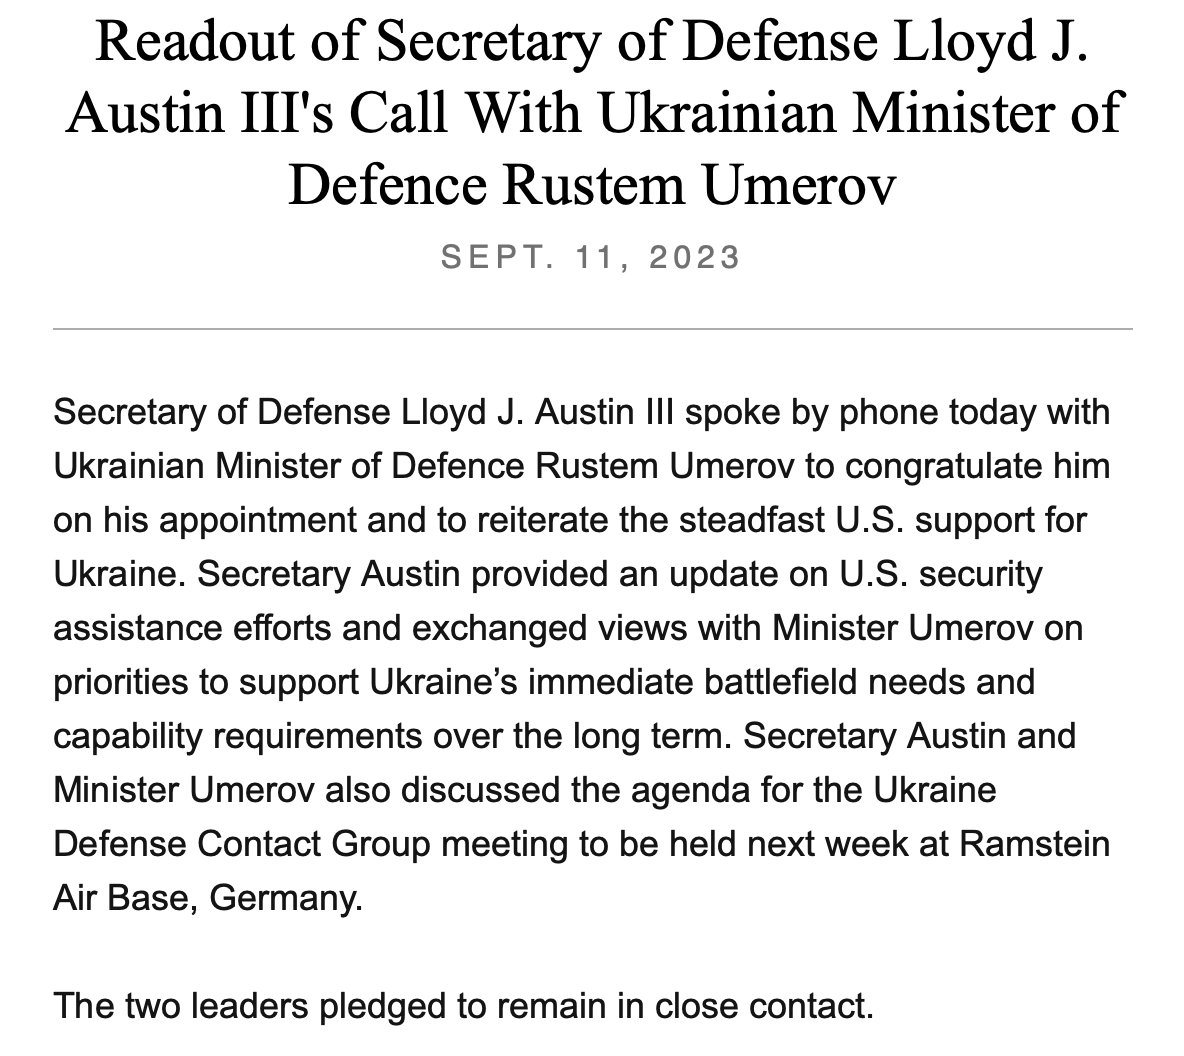 @SecDef Lloyd Austin dels EUA va parlar dilluns amb el nou ministre de Defensa d'Ucraïna Rustem Umerov, per @DeptofDefense. La crida va ser reiterar el suport ferm dels EUA a Ucraïna i també donar a Umerov una actualització de l'assistència dels EUA